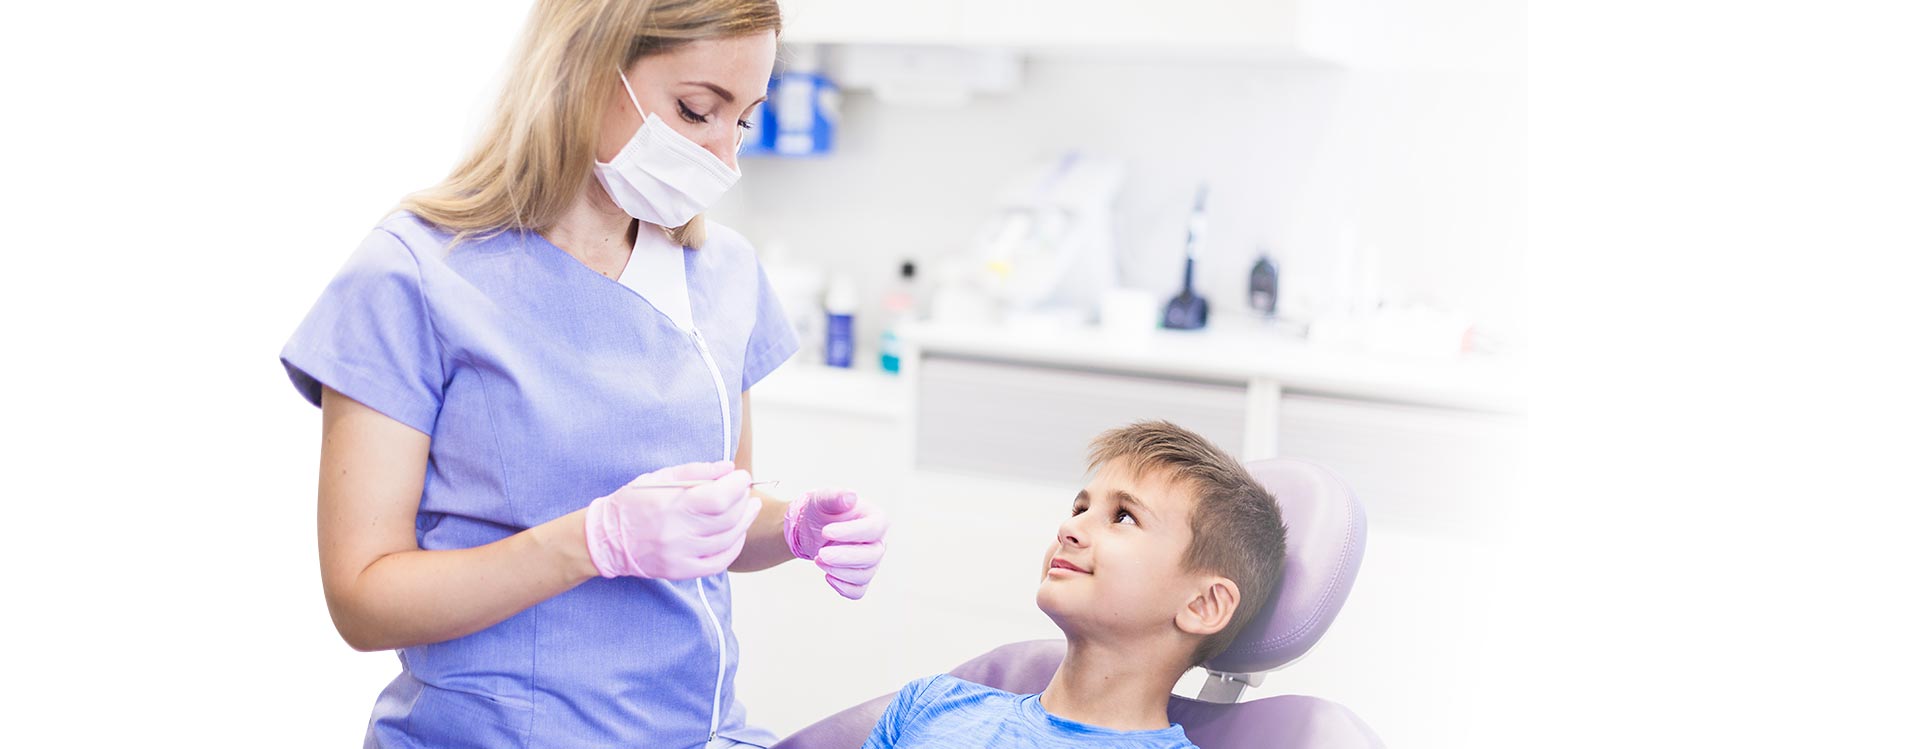 Servicio de odontología infantil y pediátrica en Madrid